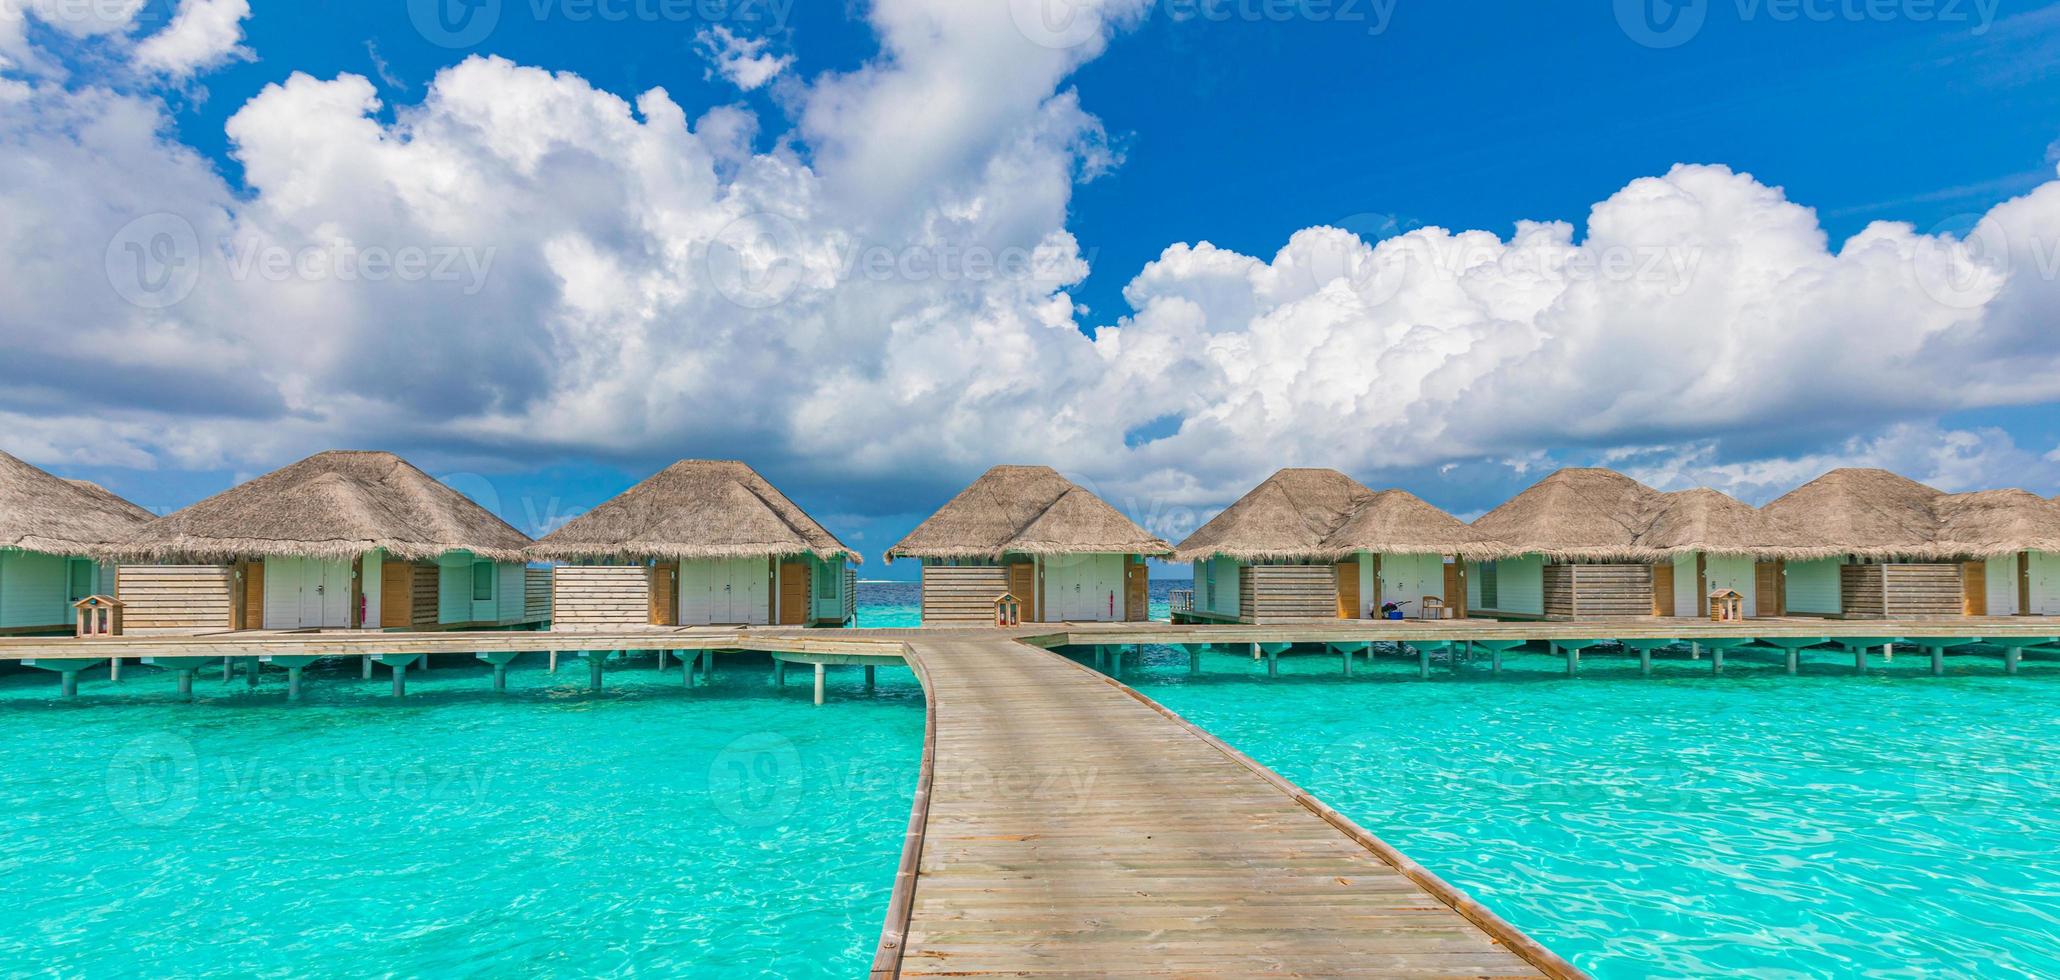 overwater bungalows in de indische oceaan, maldiven eilanden. tropische oceaanlagune, turkoois water, idyllische bewolkte hemel. zomervakantie, vakantie, reisbestemming foto